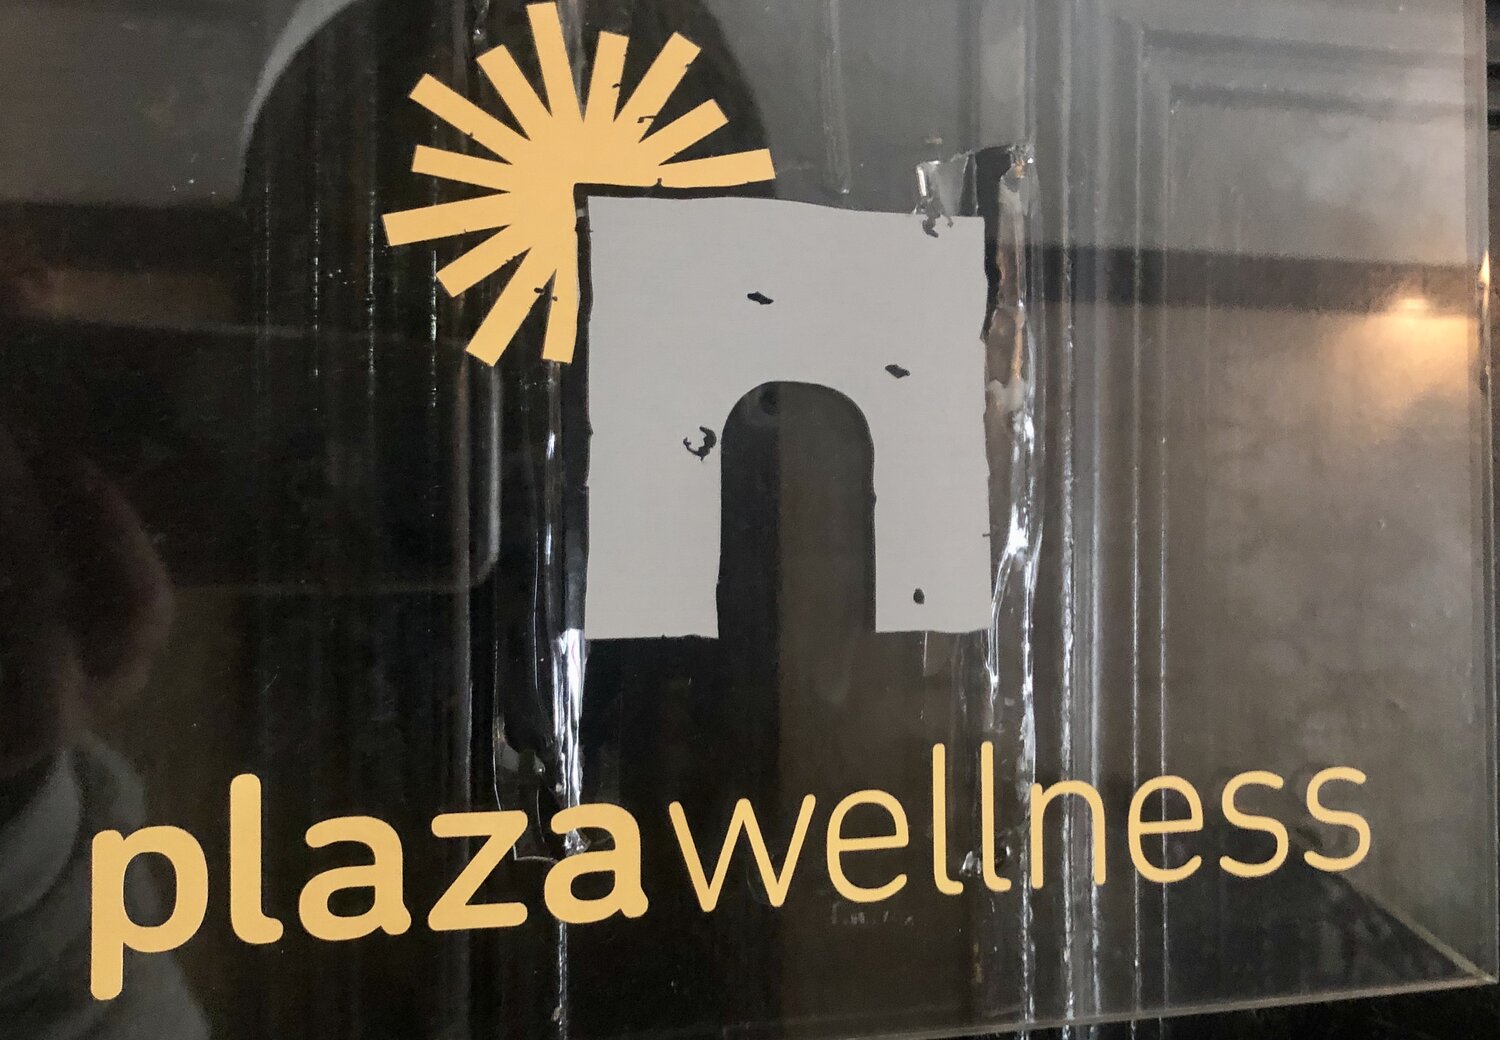        plaza wellness